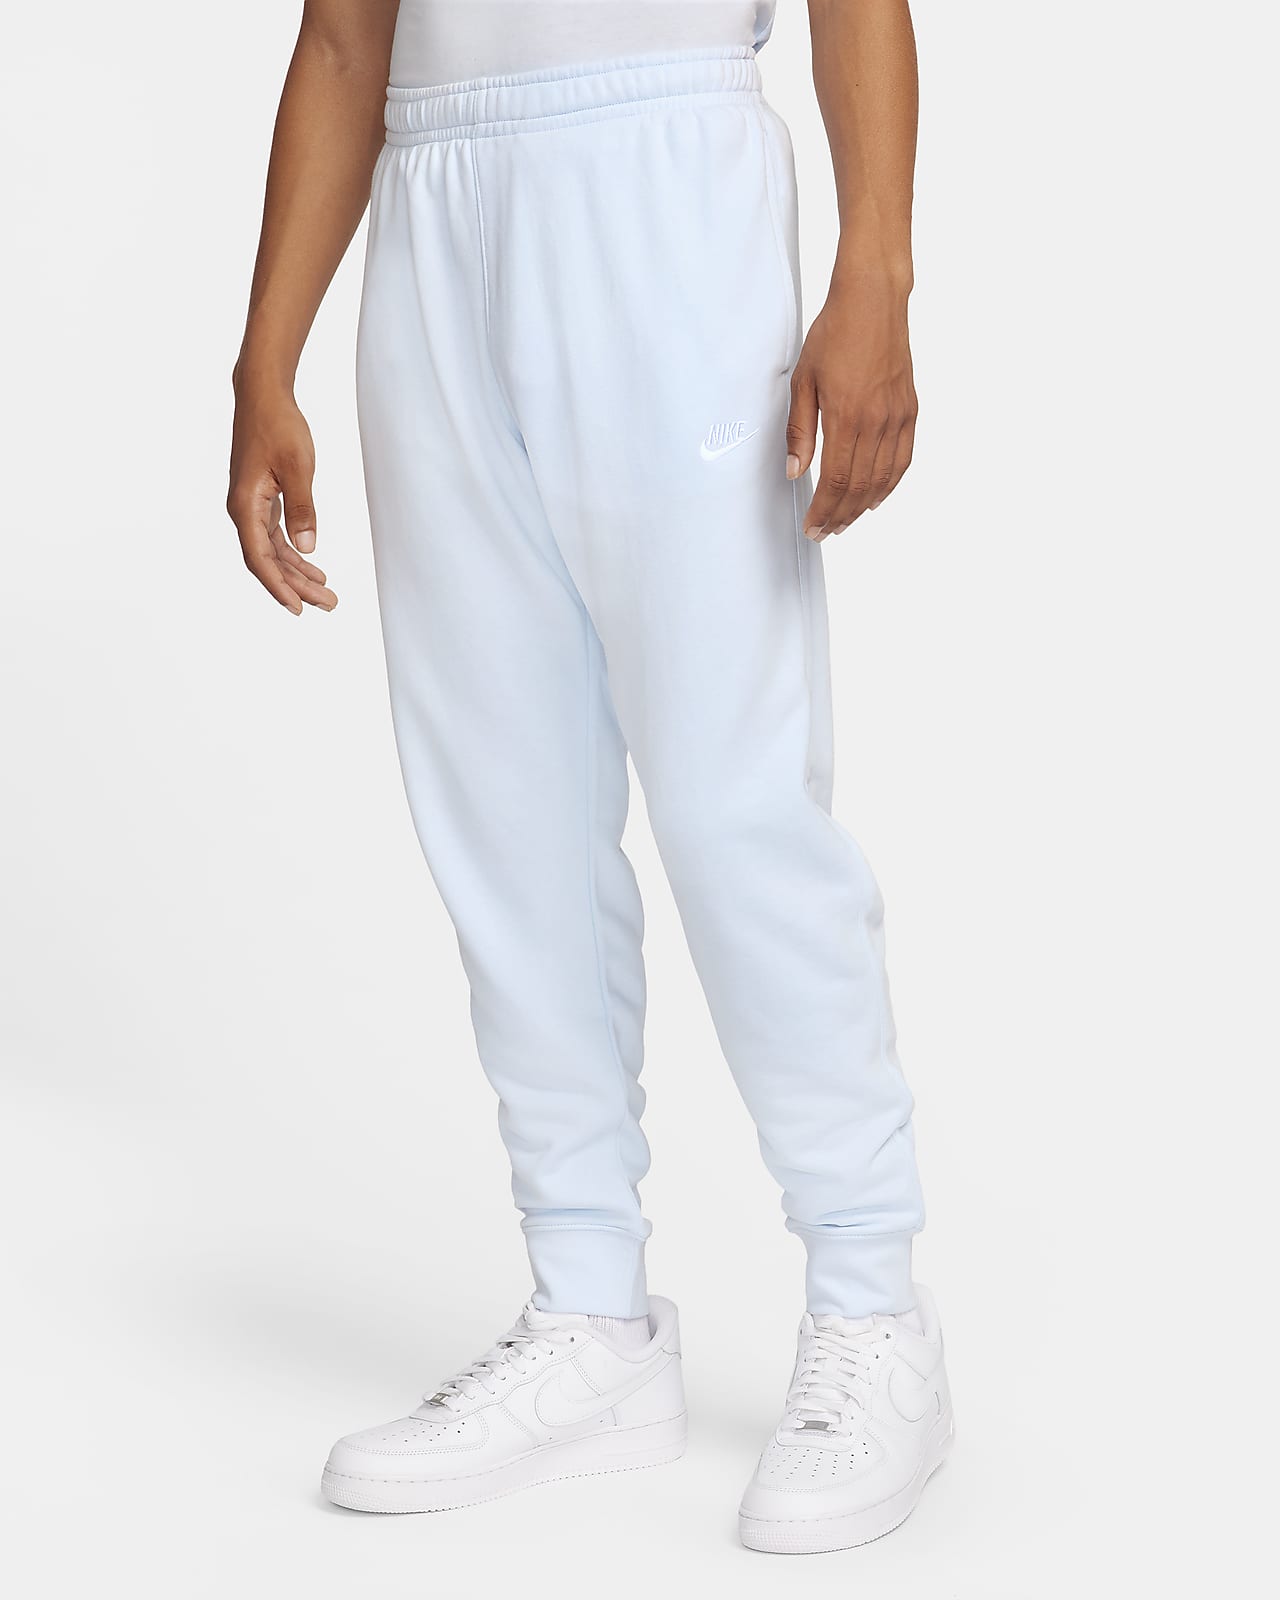 Cinq modèles de pantalon Nike pour homme suffisamment confortables pour  dormir. Nike LU